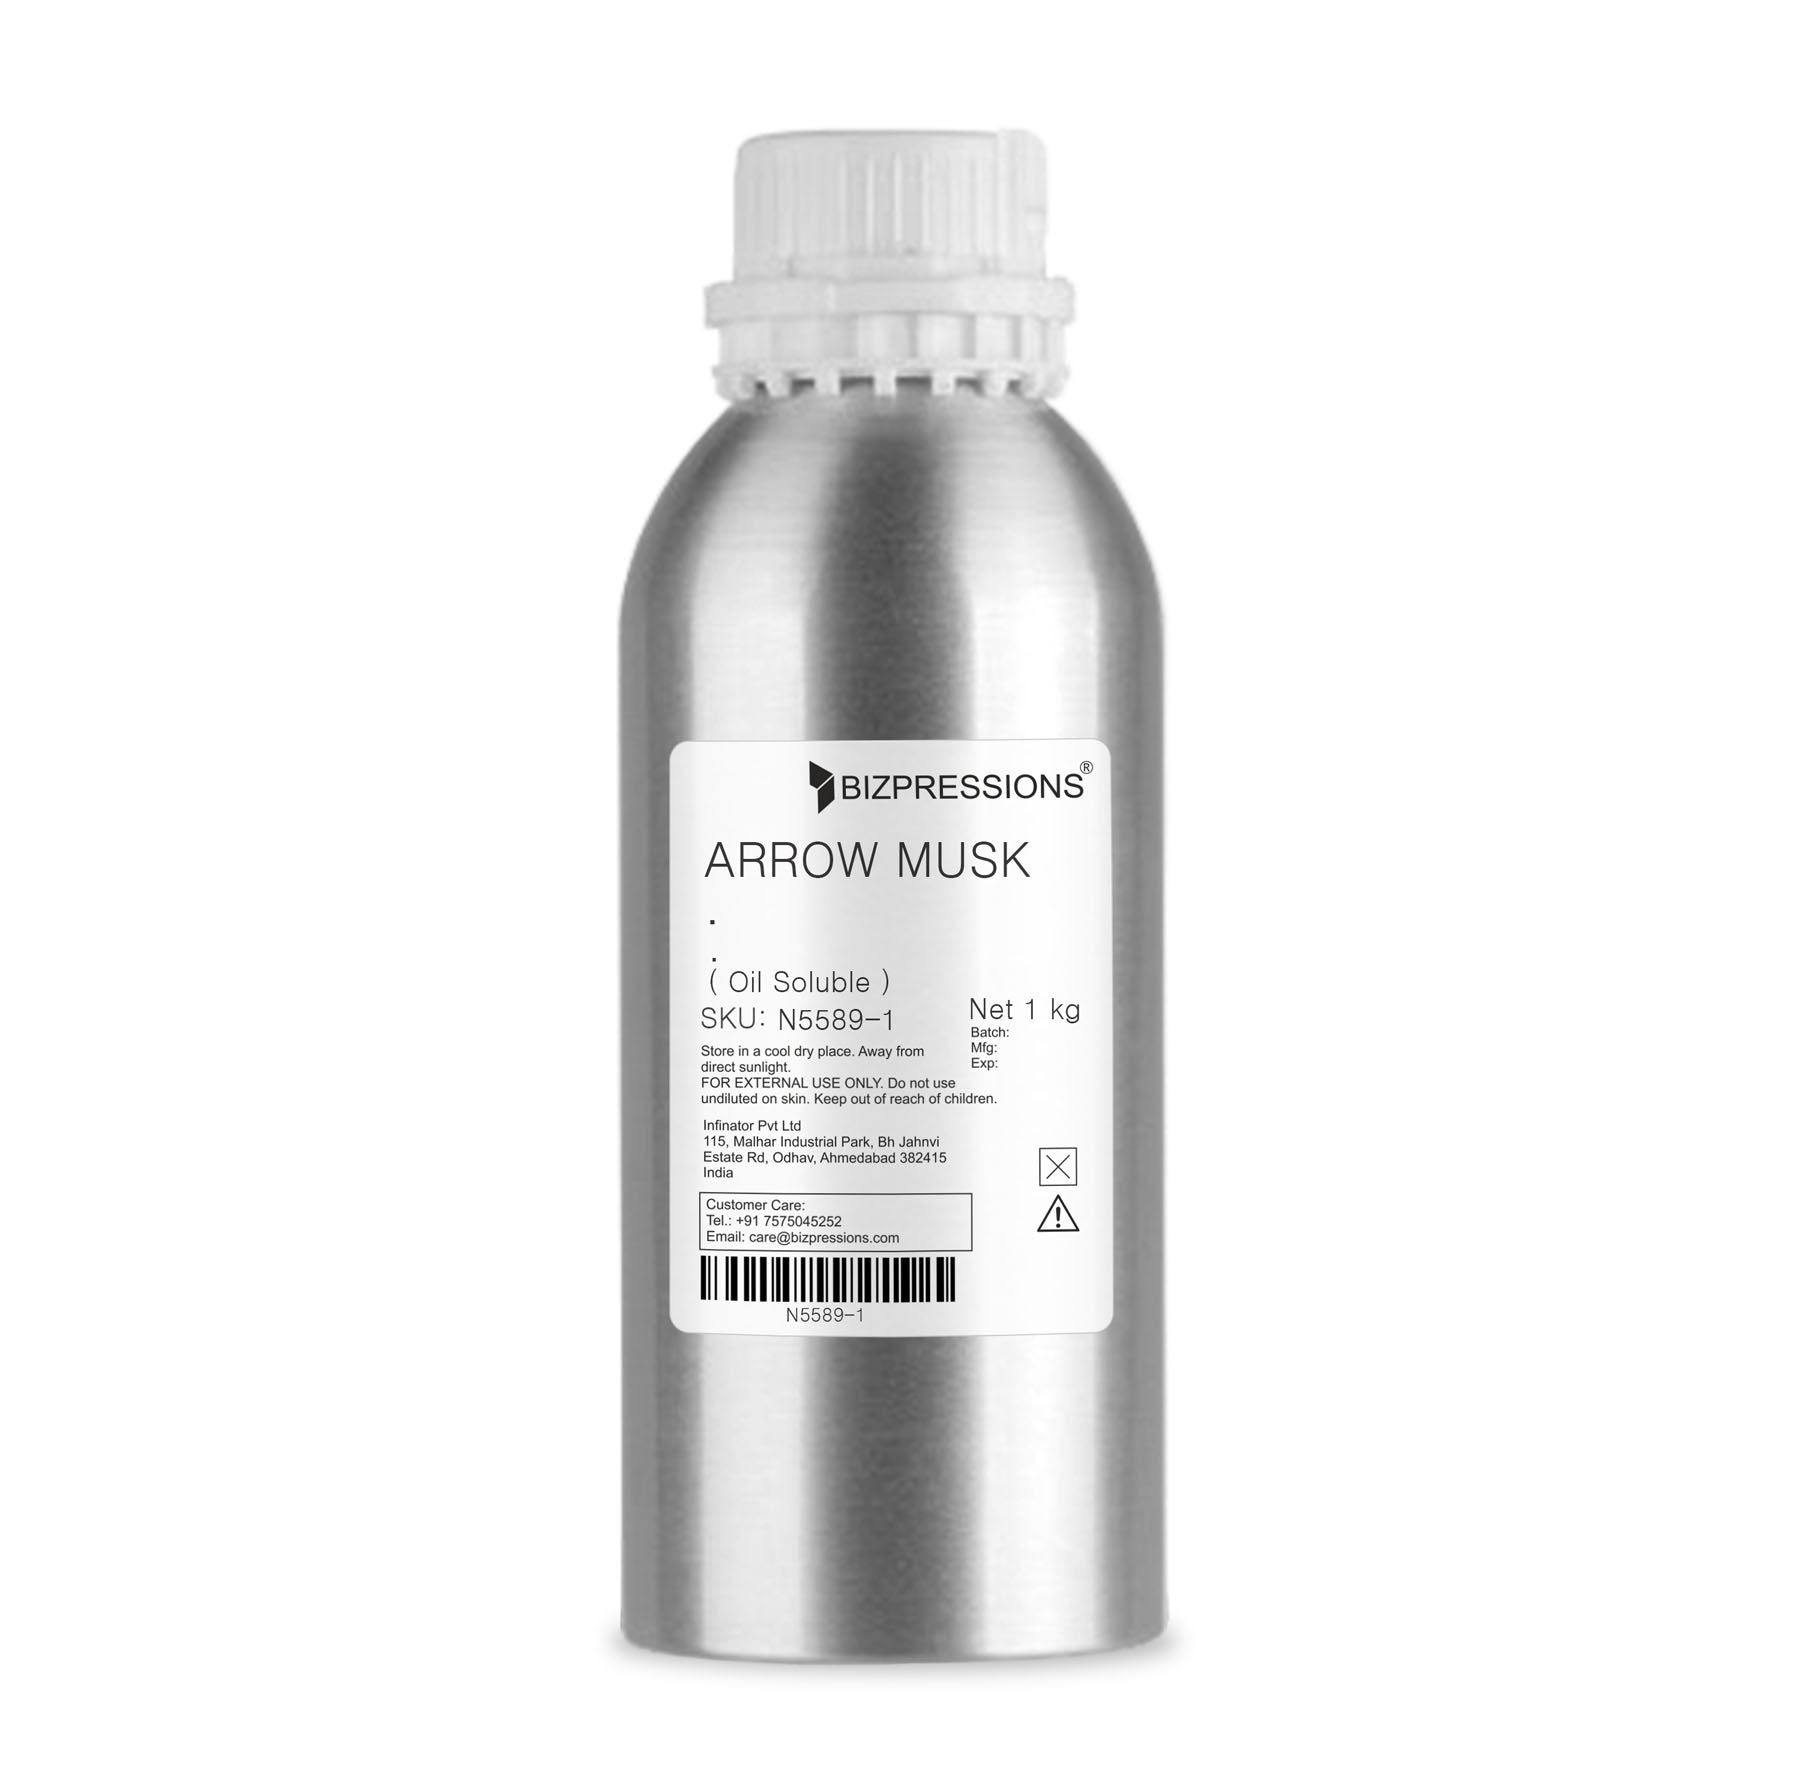 ARROW MUSK - Fragrance ( Oil Soluble ) - 1 kg